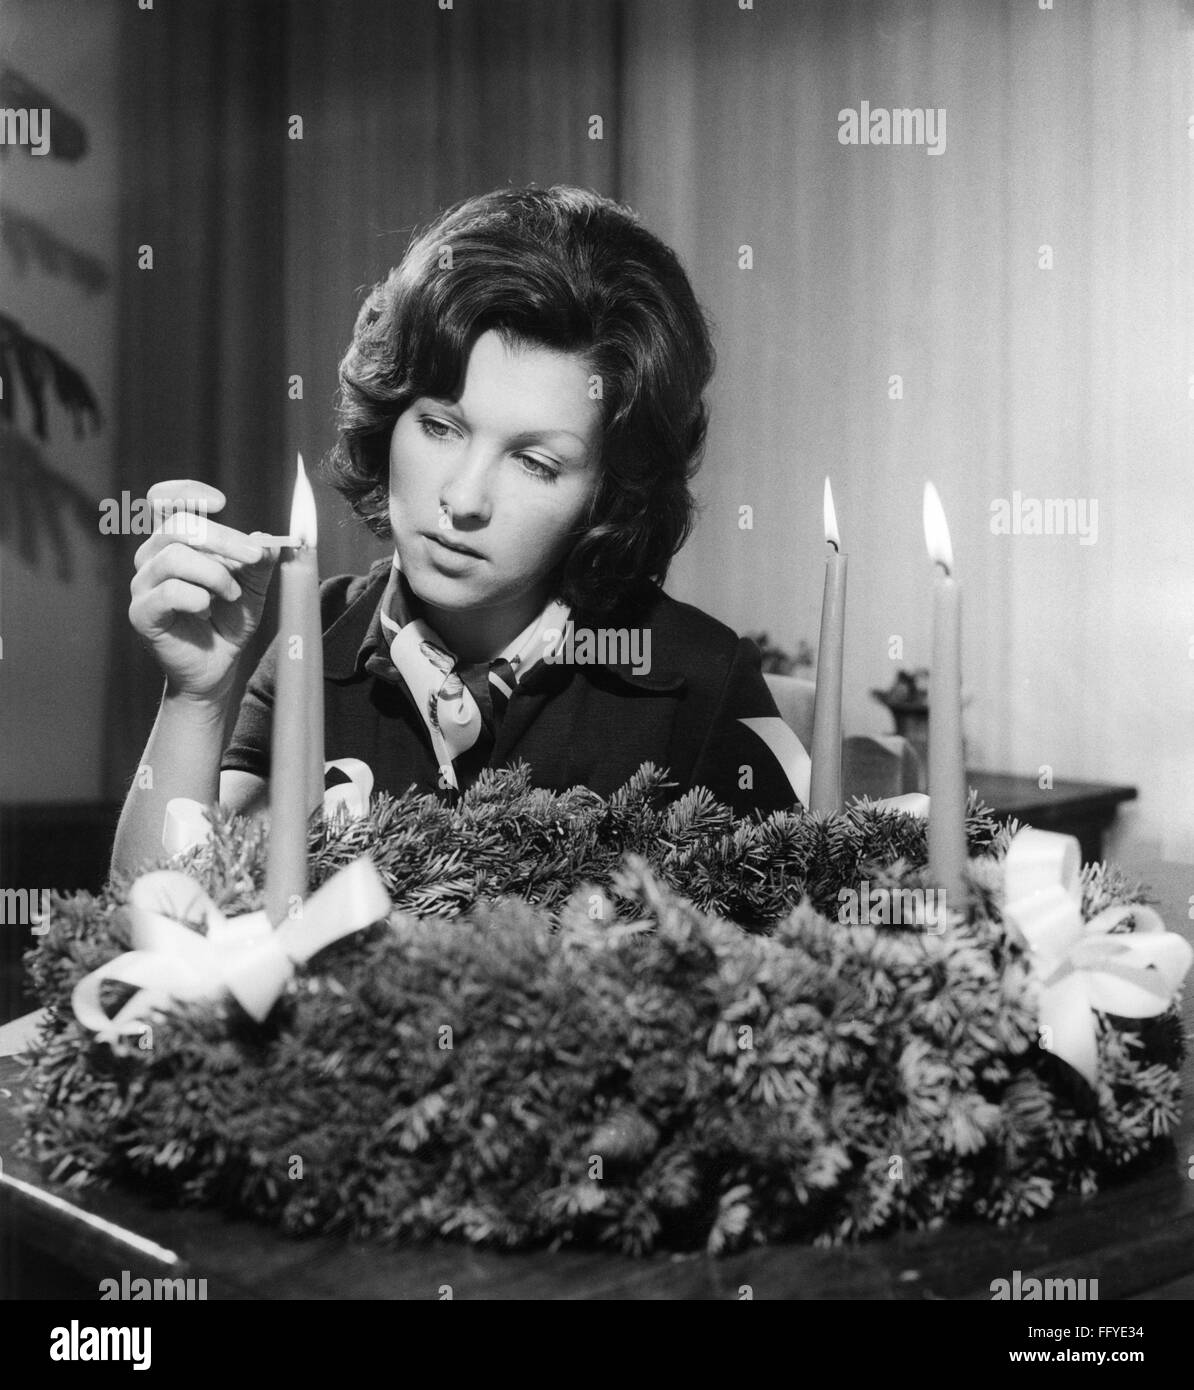 Natale, stagione dell'avvento, donna che illumina le candele sulla corona dell'Avvento, circa 1970, diritti aggiuntivi-clearences-non disponibile Foto Stock